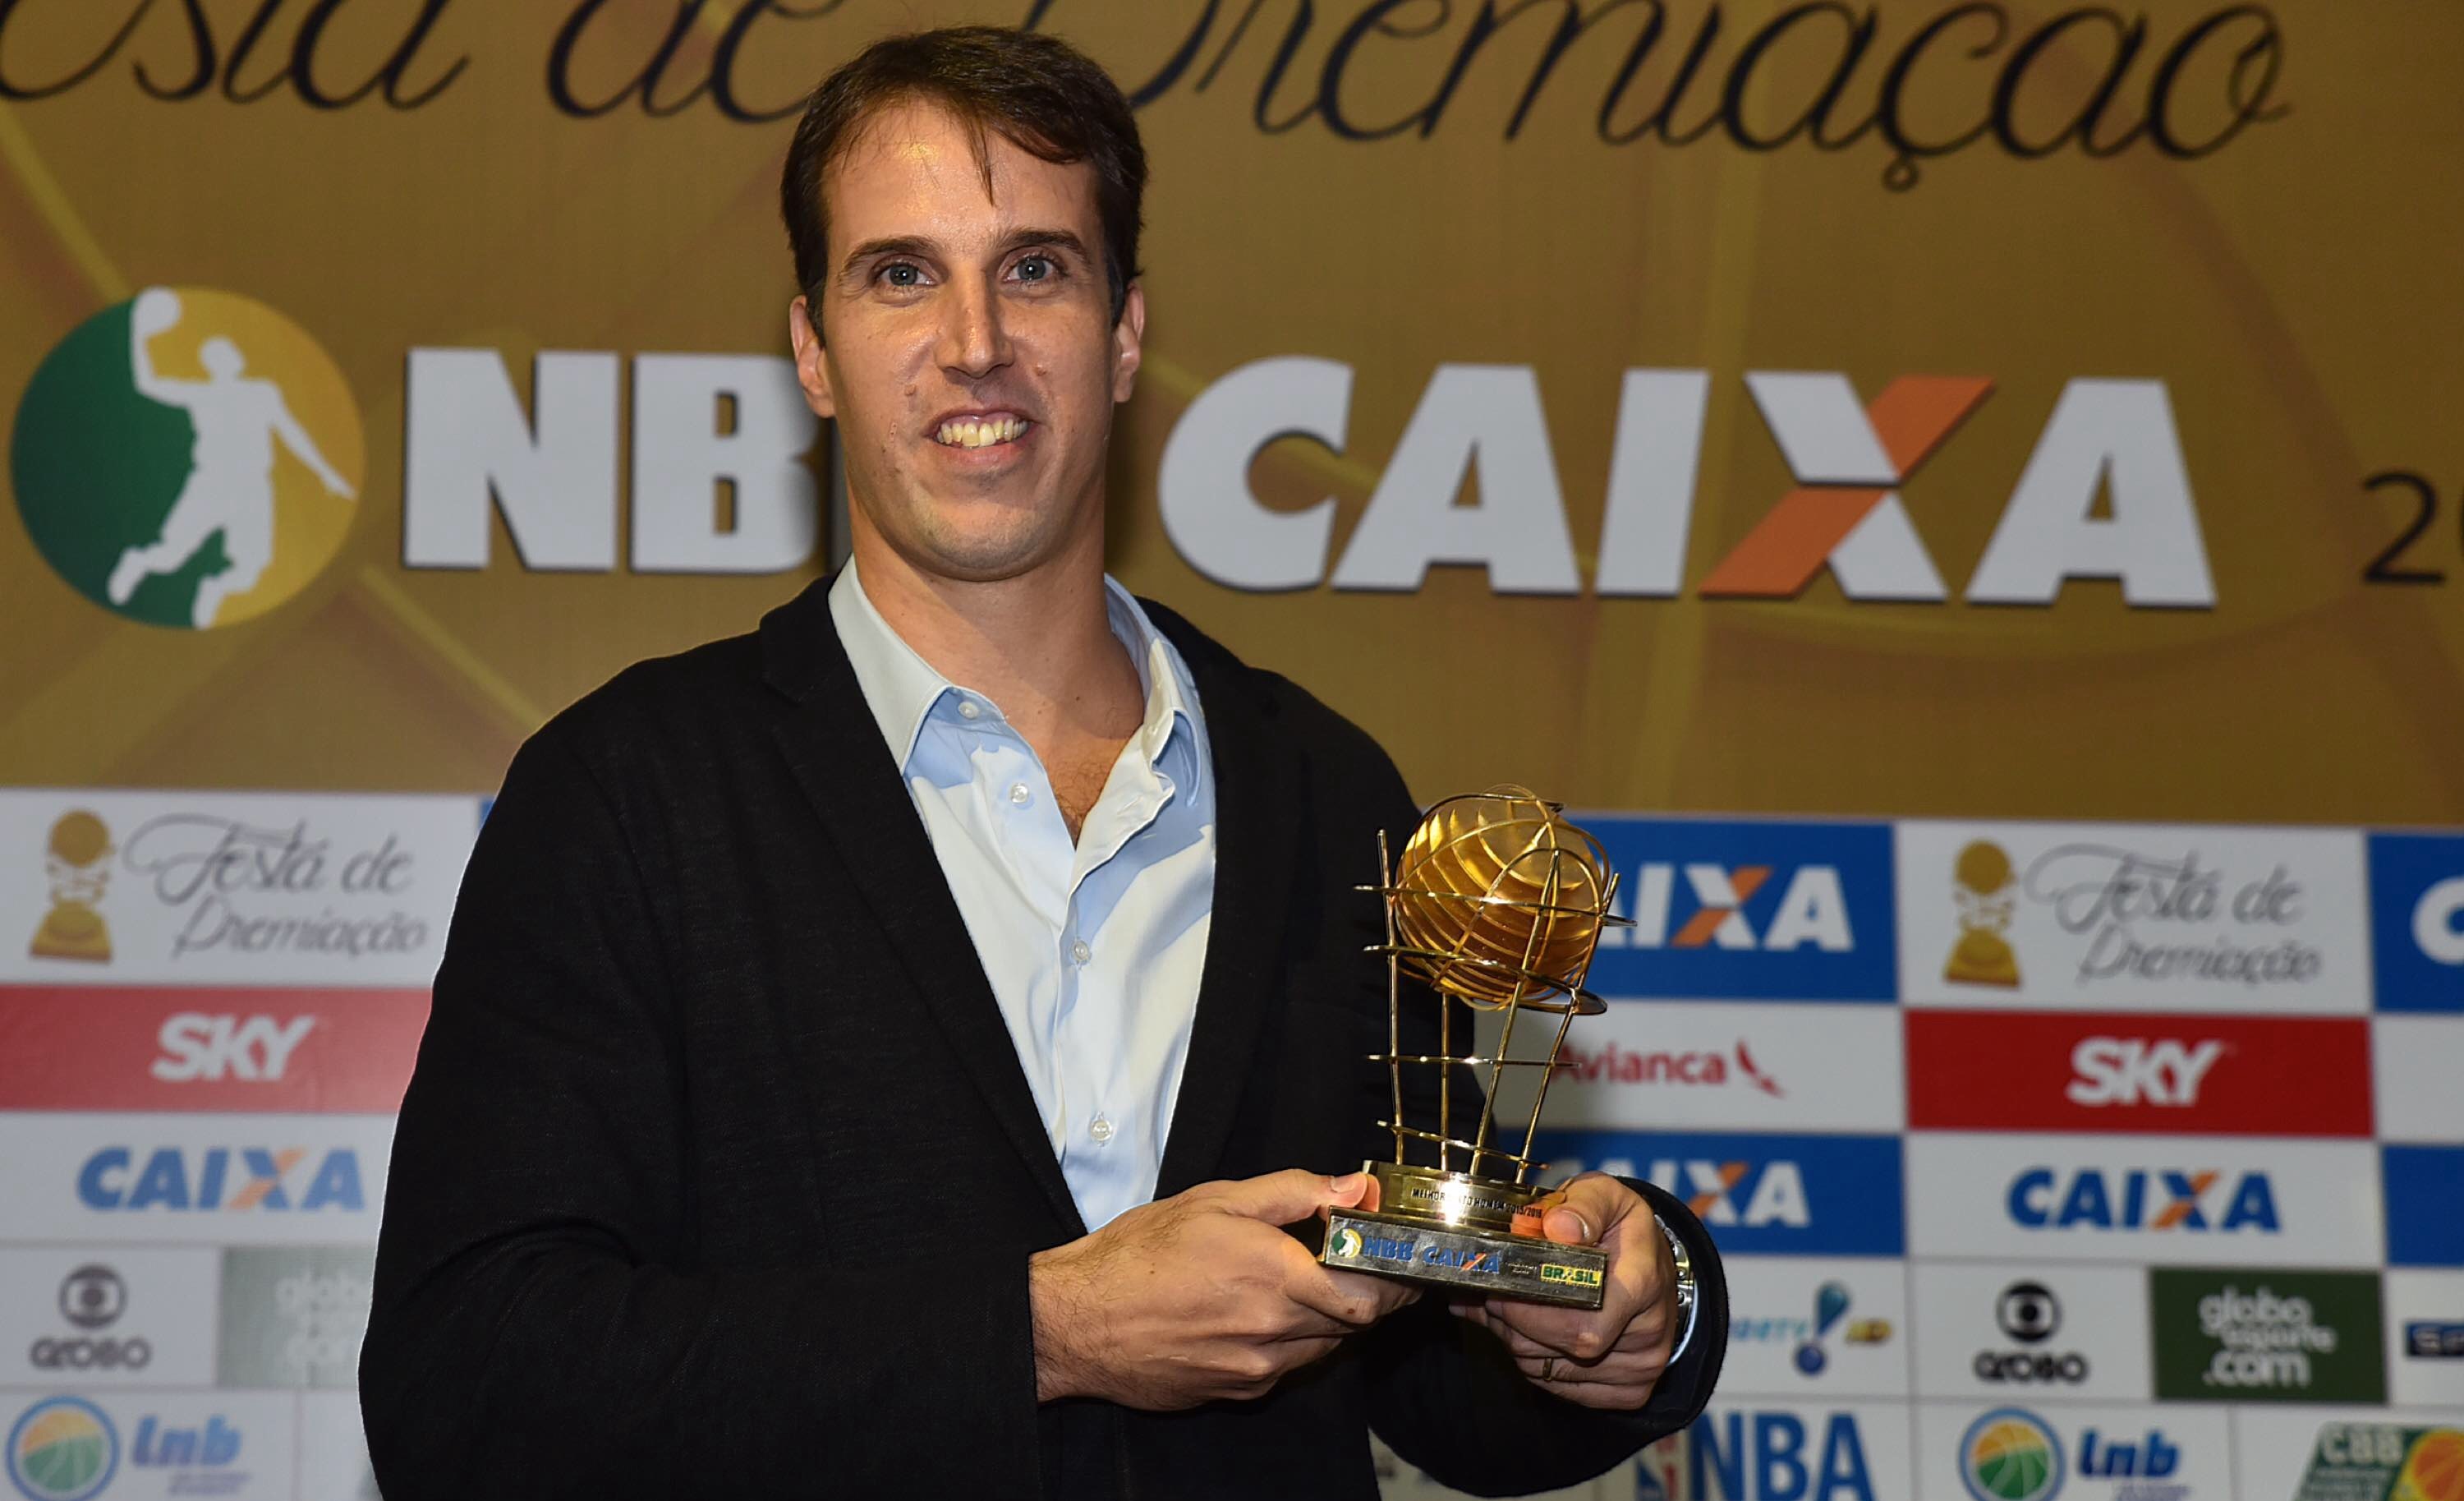 Dono de diversos troféus do NBB CAIXA, Marcelinho ficou com o prêmio de Melhor Sexto Homem nesta temporada (João Pires/LNB)